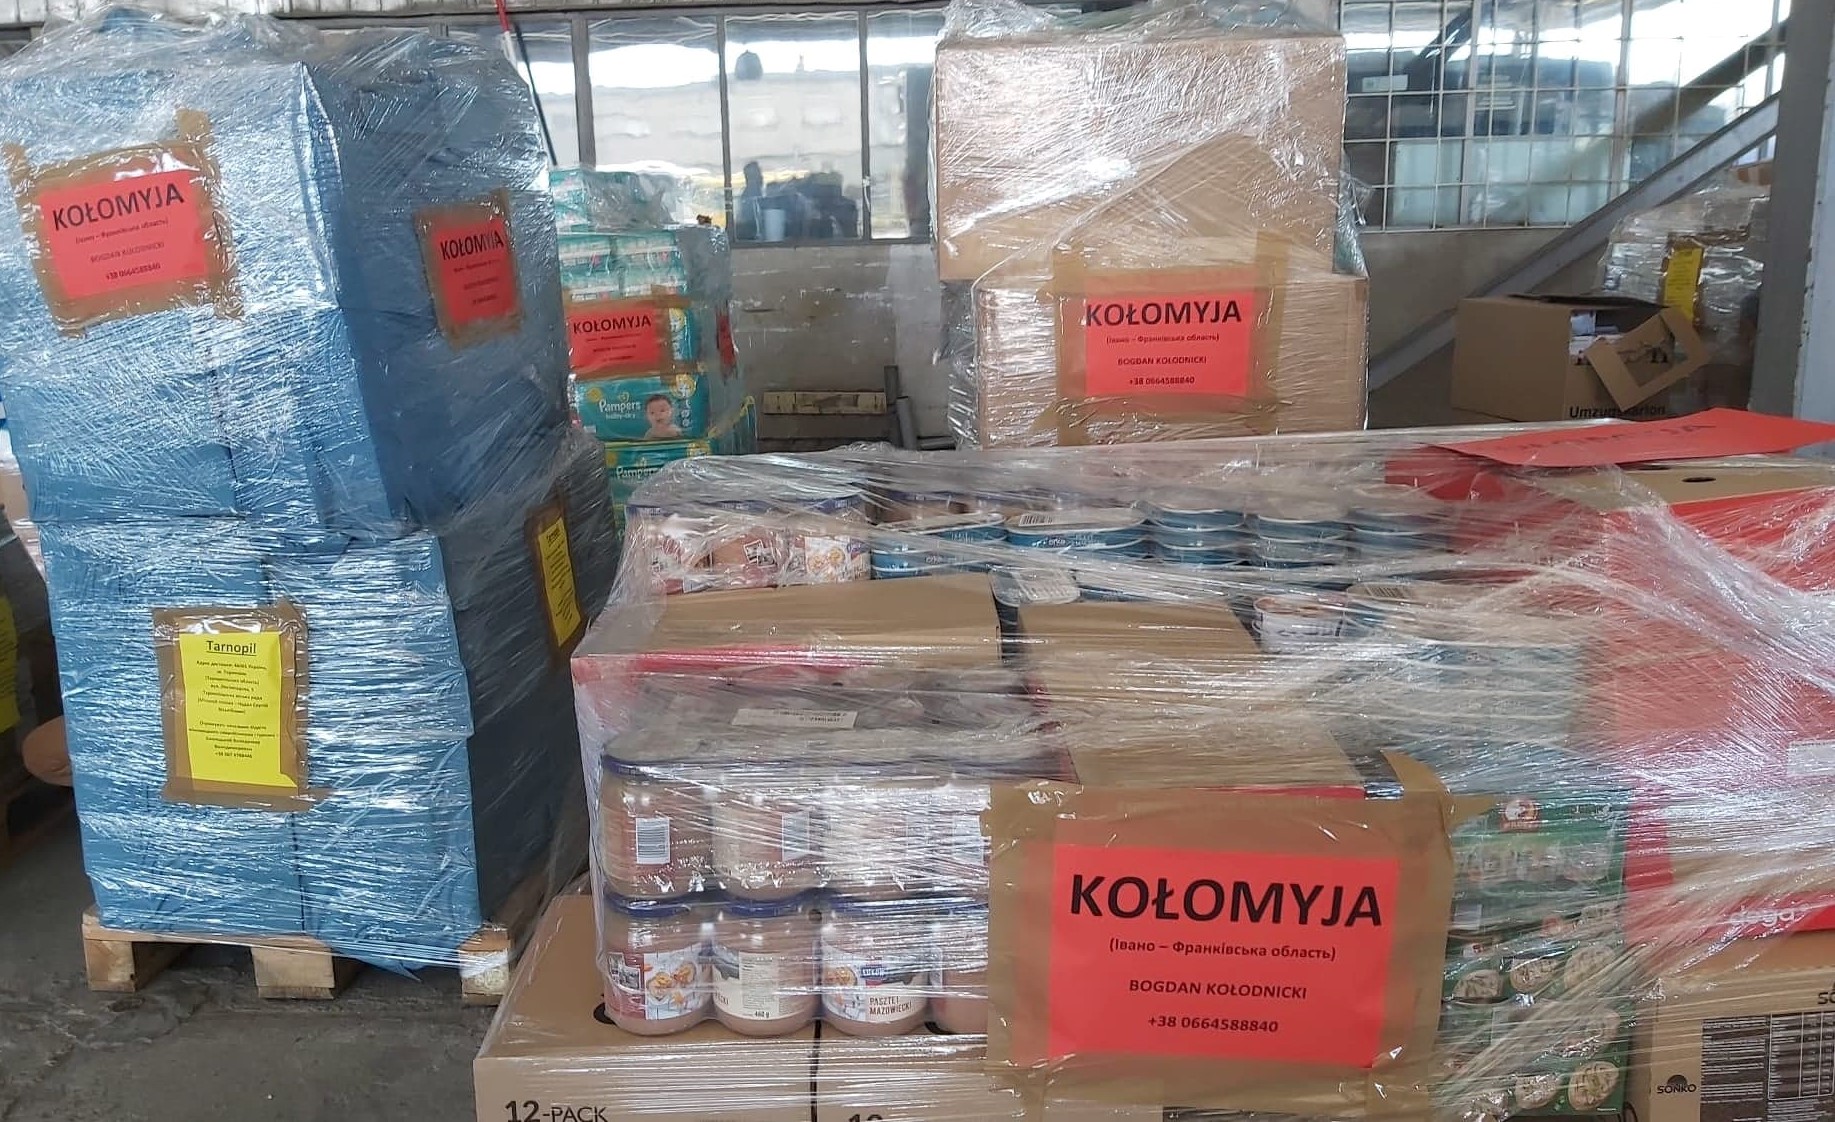 Transport humanitarny z miast partnerskich Nysy dotarB do KoBomyi